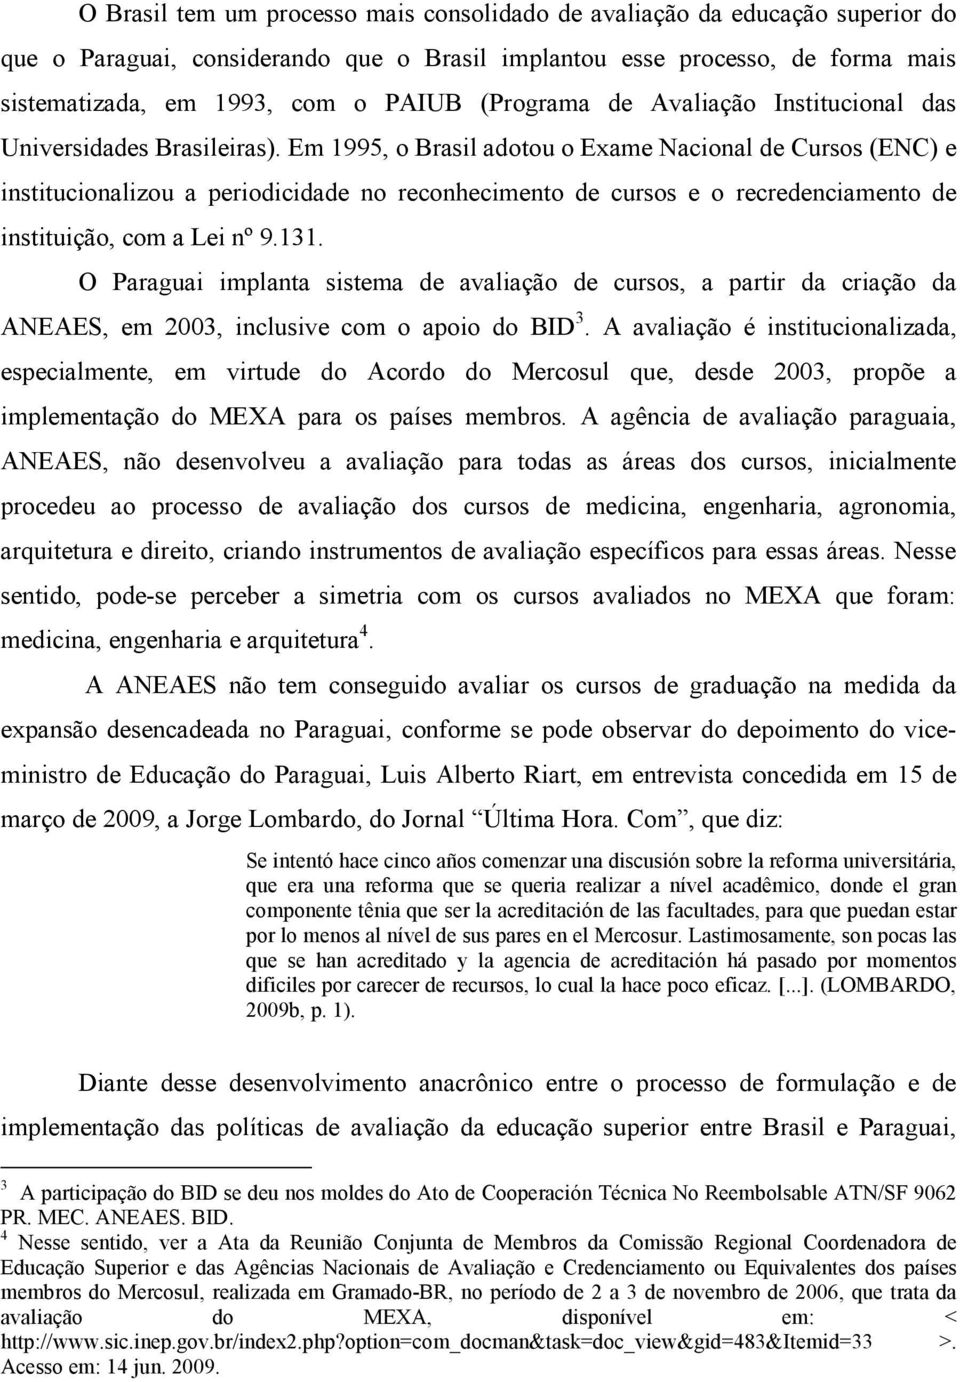 Em 1995, o Brasil adotou o Exame Nacional de Cursos (ENC) e institucionalizou a periodicidade no reconhecimento de cursos e o recredenciamento de instituição, com a Lei nº 9.131.